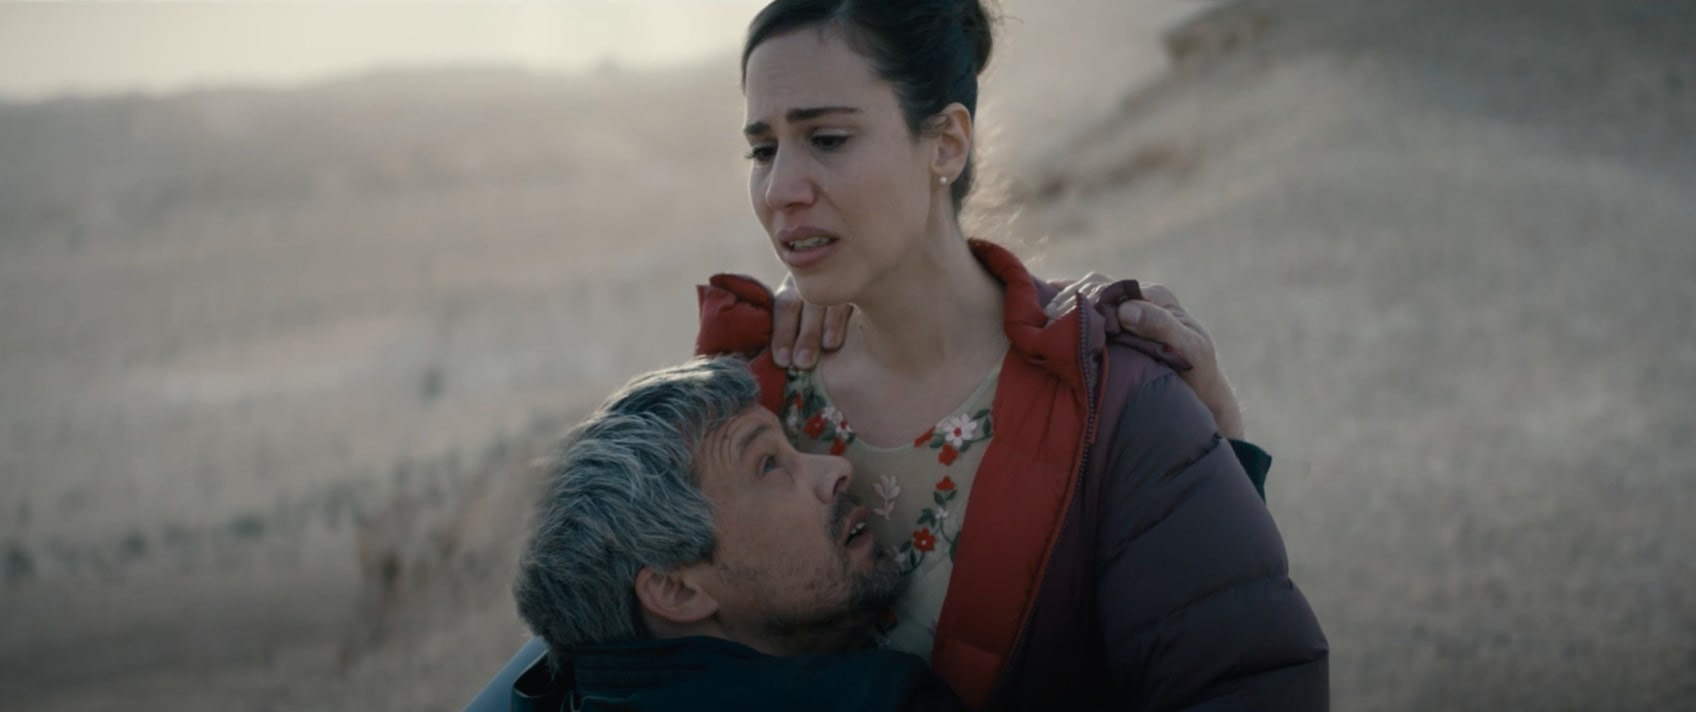 Cena do filme Ahed's Knee mostra um homem se jogando no colo de uma mulher, que tem uma expressão de dor e tristeza no rosto.